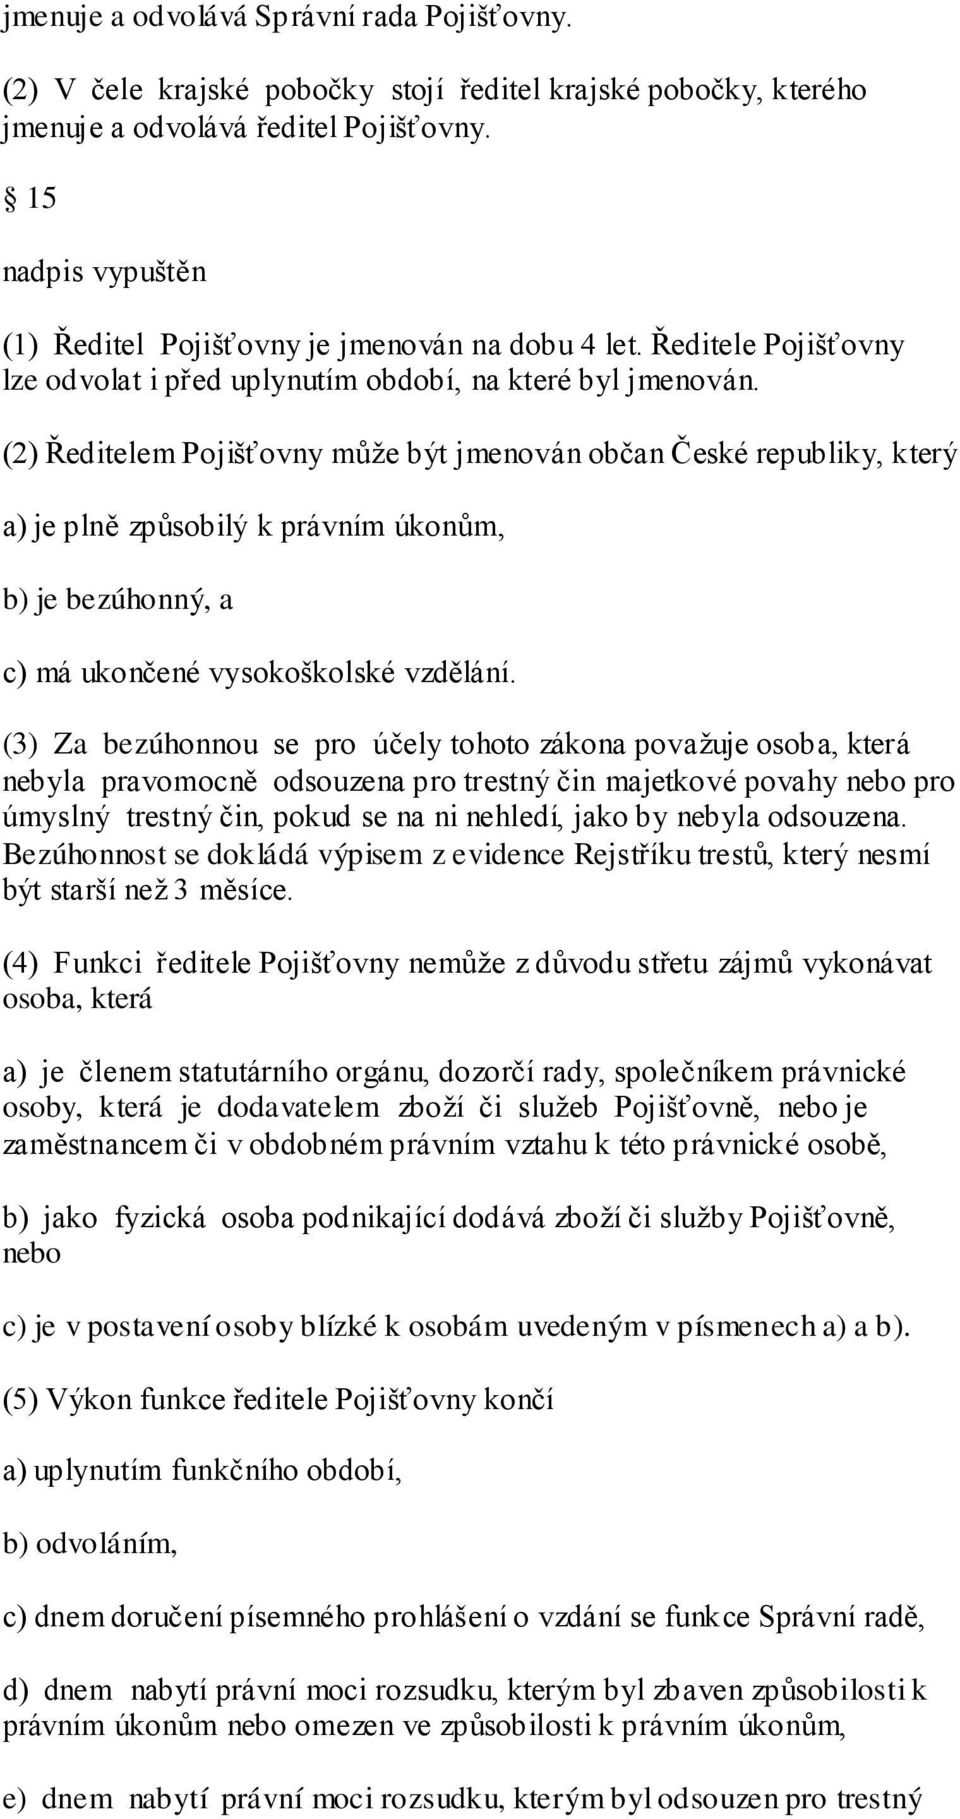 (2) Ředitelem Pojišťovny může být jmenován občan České republiky, který a) je plně způsobilý k právním úkonům, b) je bezúhonný, a c) má ukončené vysokoškolské vzdělání.